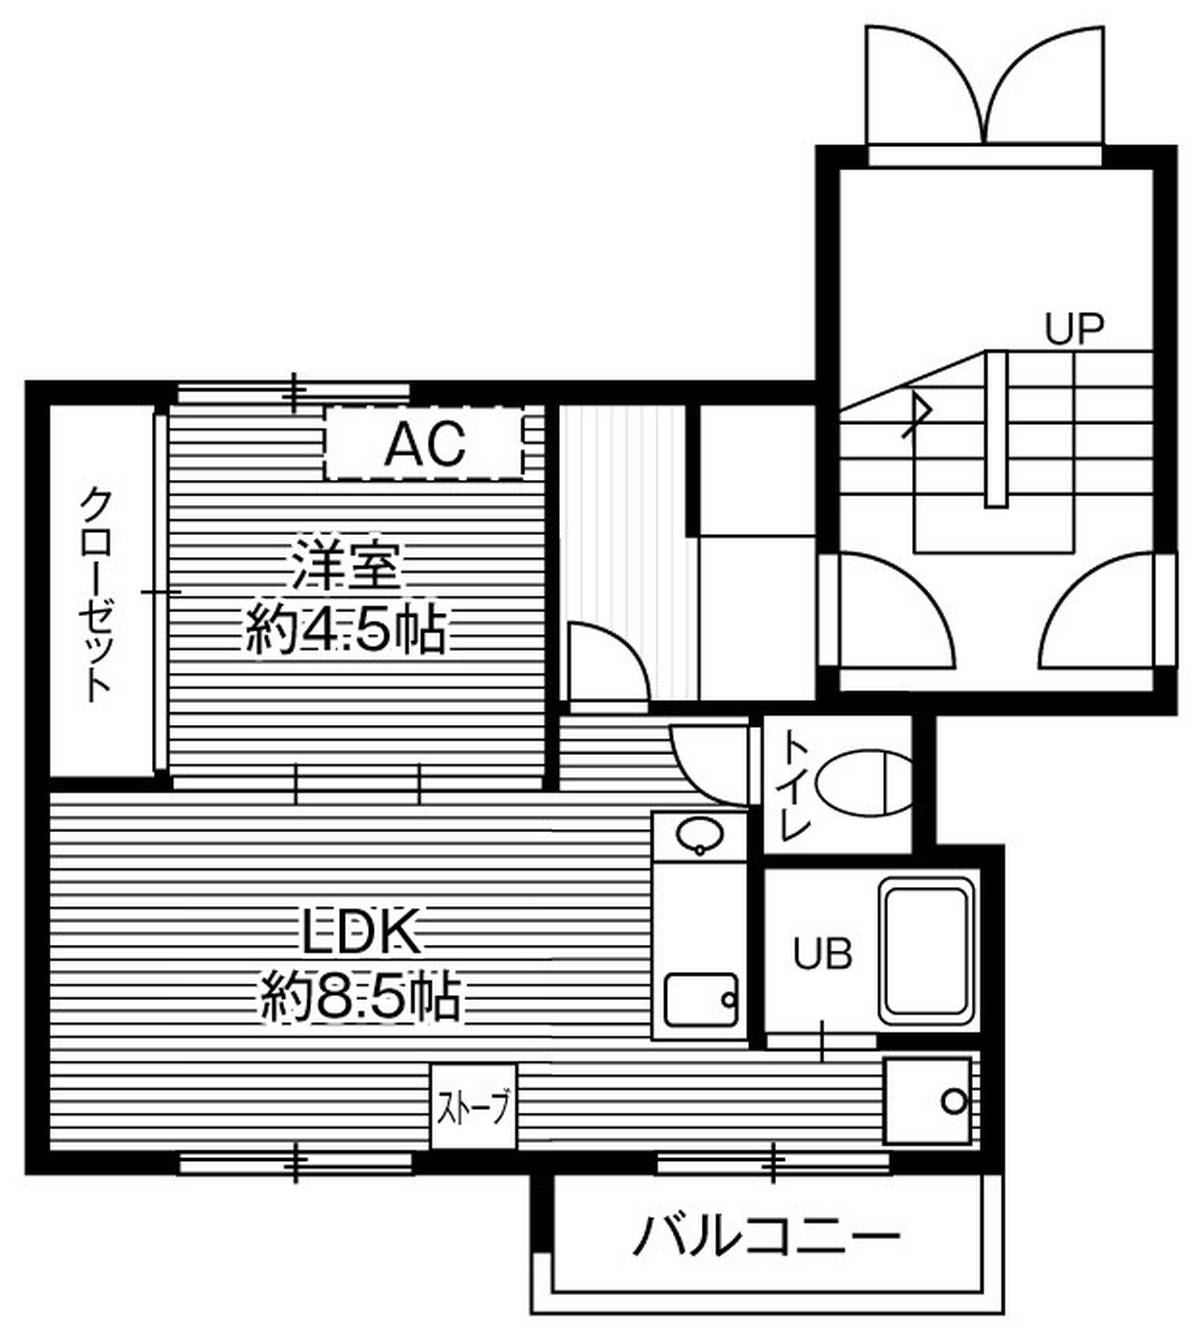 1LDK floorplan of Village House Fukuzumi in Toyohira-ku